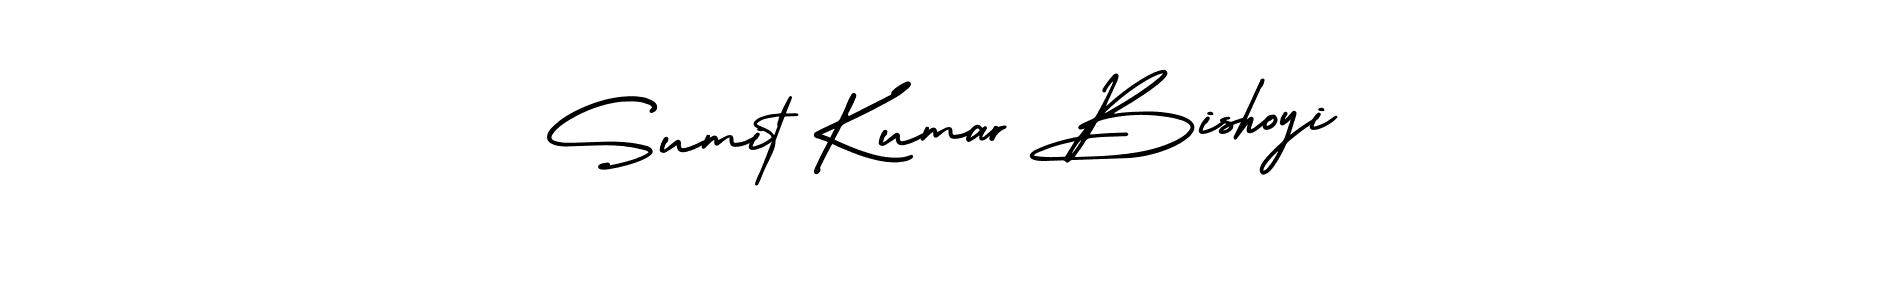 Sumit Kumar Bishoyi stylish signature style. Best Handwritten Sign (AmerikaSignatureDemo-Regular) for my name. Handwritten Signature Collection Ideas for my name Sumit Kumar Bishoyi. Sumit Kumar Bishoyi signature style 3 images and pictures png